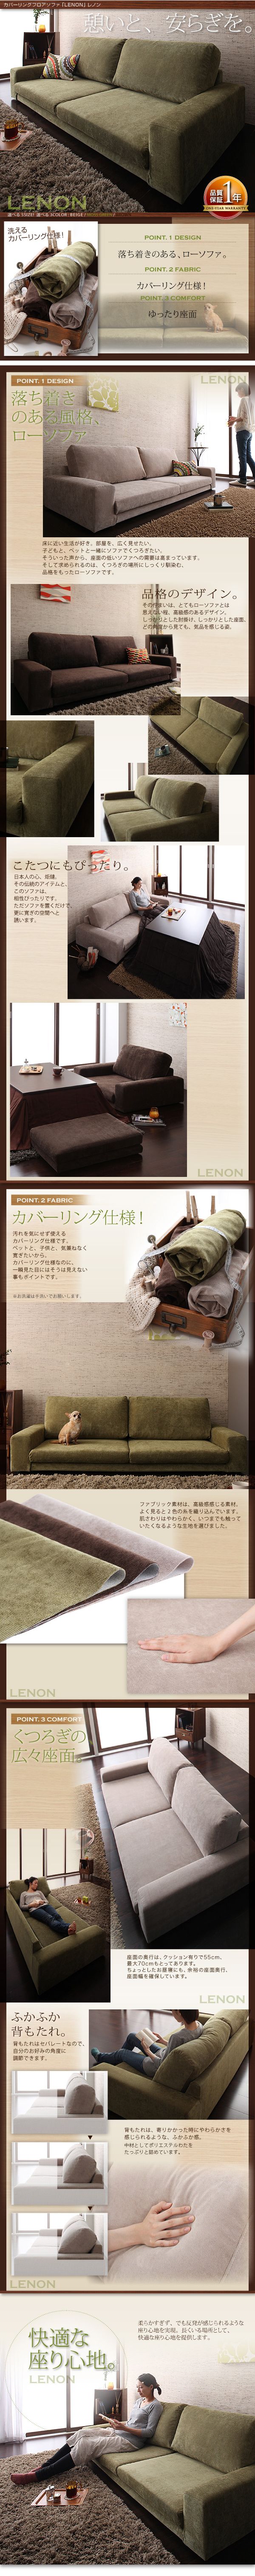 新作新品■LENON 3P+オットマン/ブラウン カバーリングフロアソファ [レノン] ローソファ 子どもと、ペットと一緒に こたつにも 布製